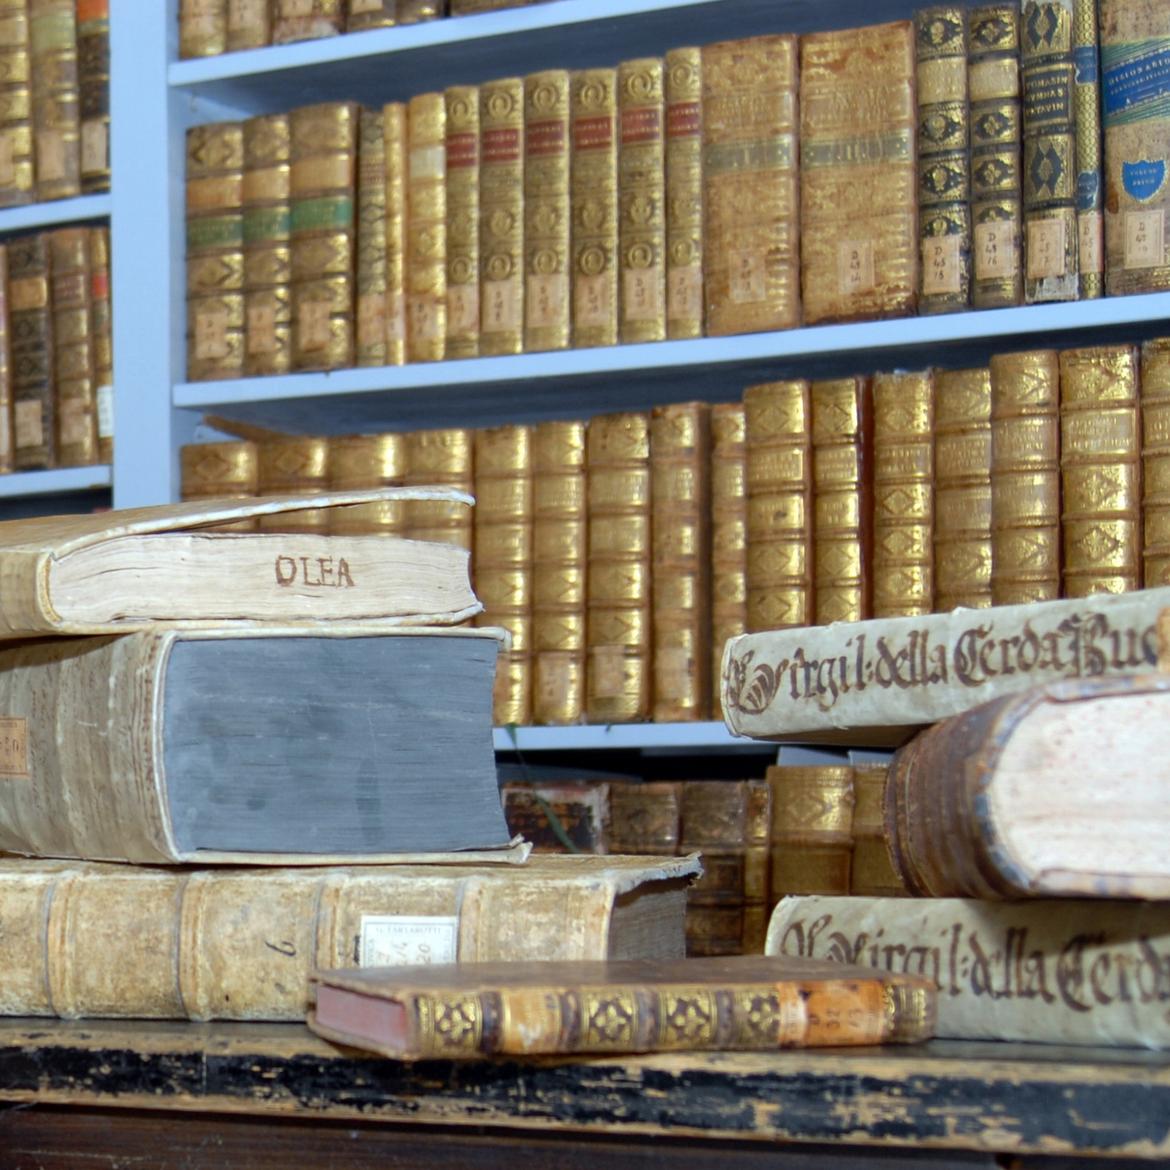 Magazzini storici Biblioteca civica Rovereto